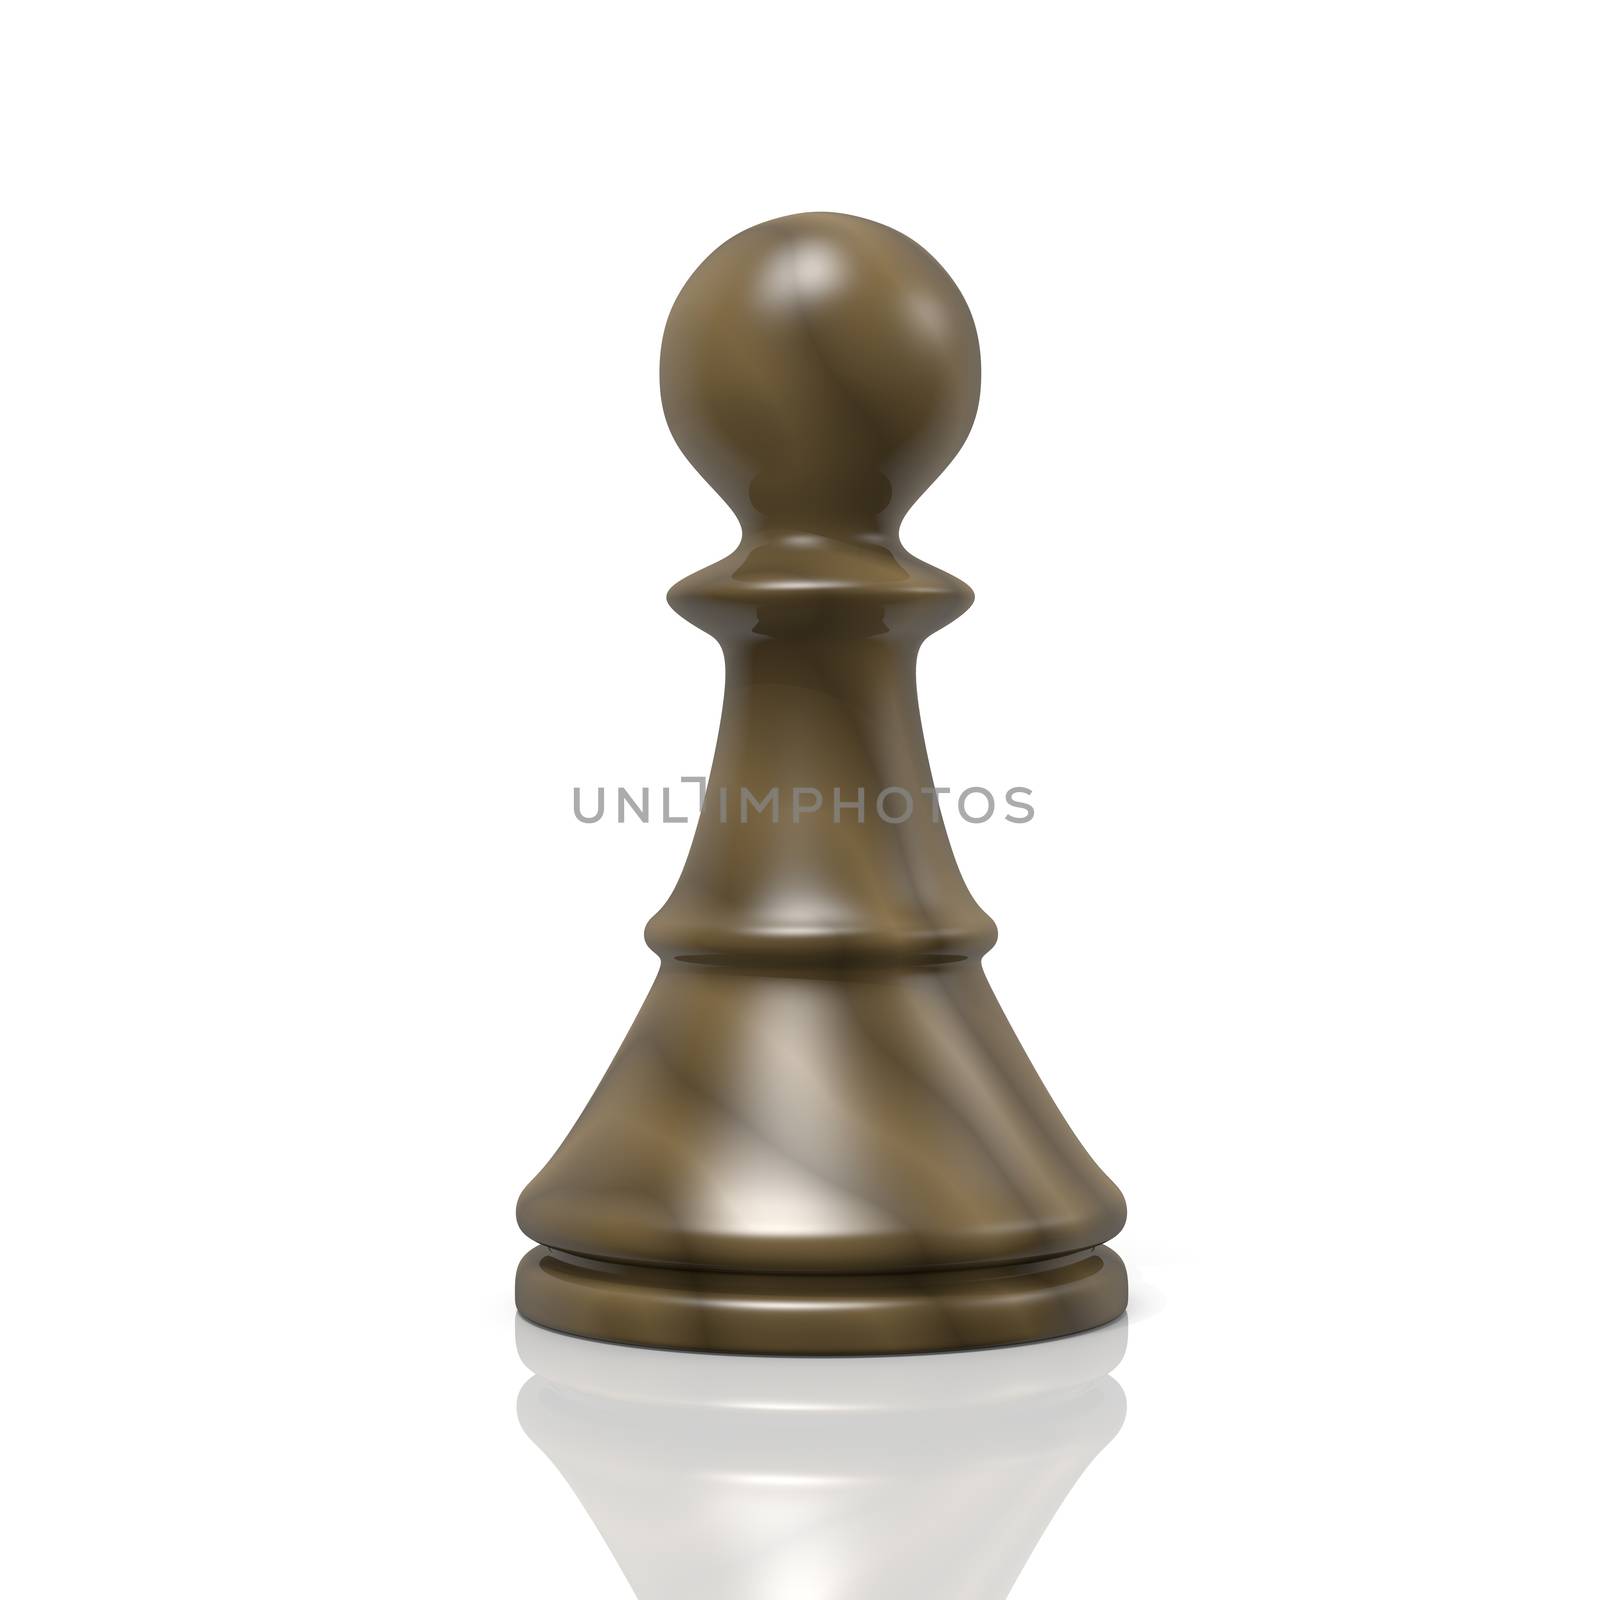 Single Isolated Black Wood Chessman on White Background